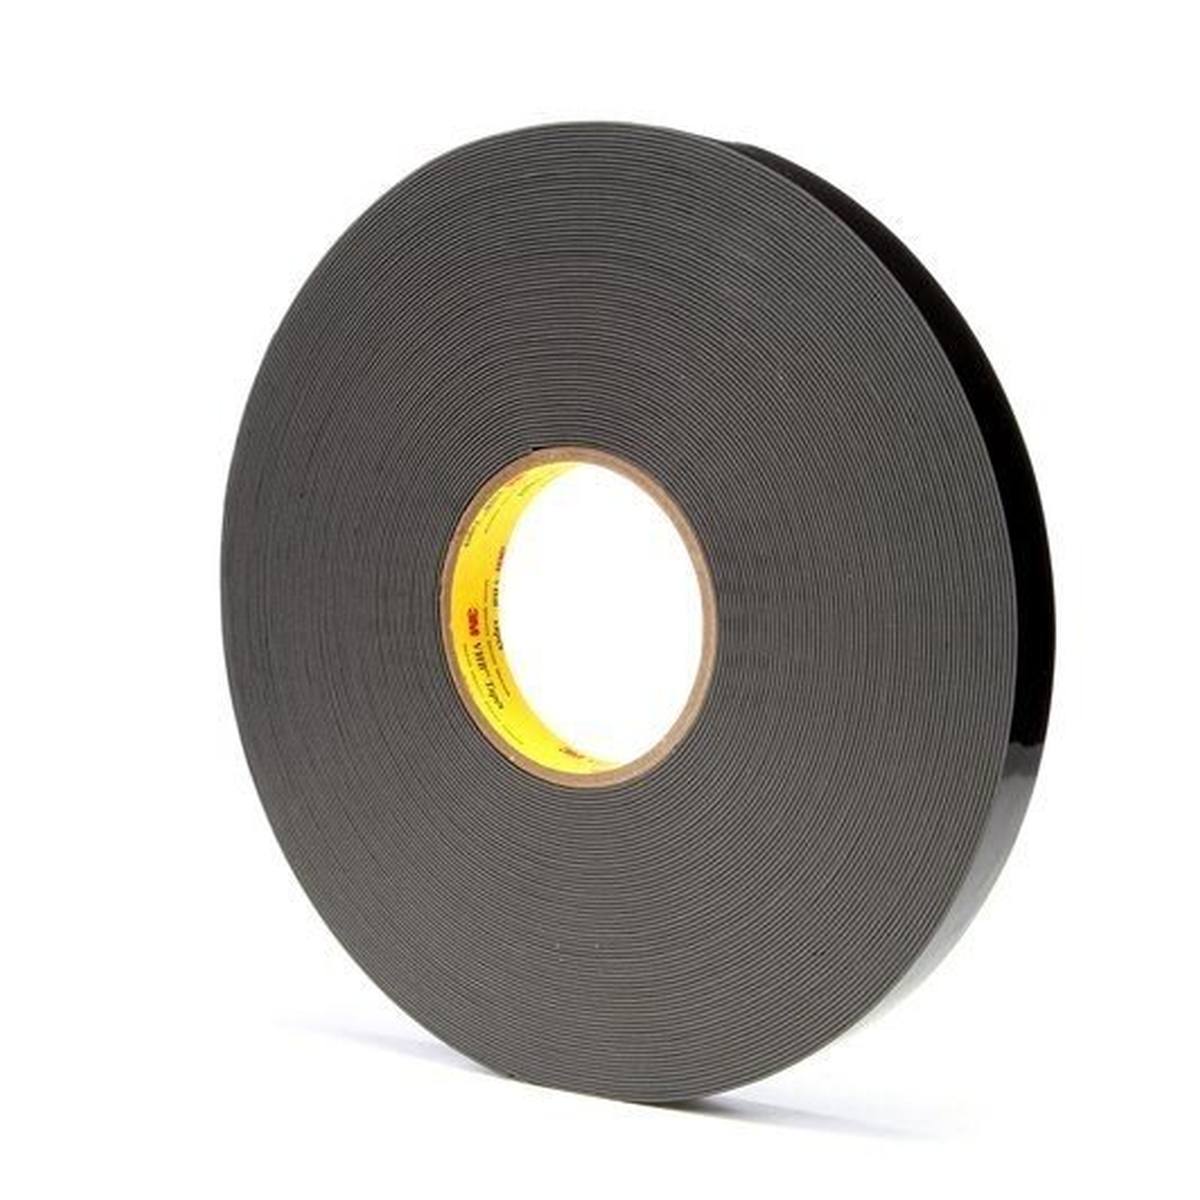 3M VHB adhesive tape 4929F, black, 6 mm x 33 m, 0.6 mm